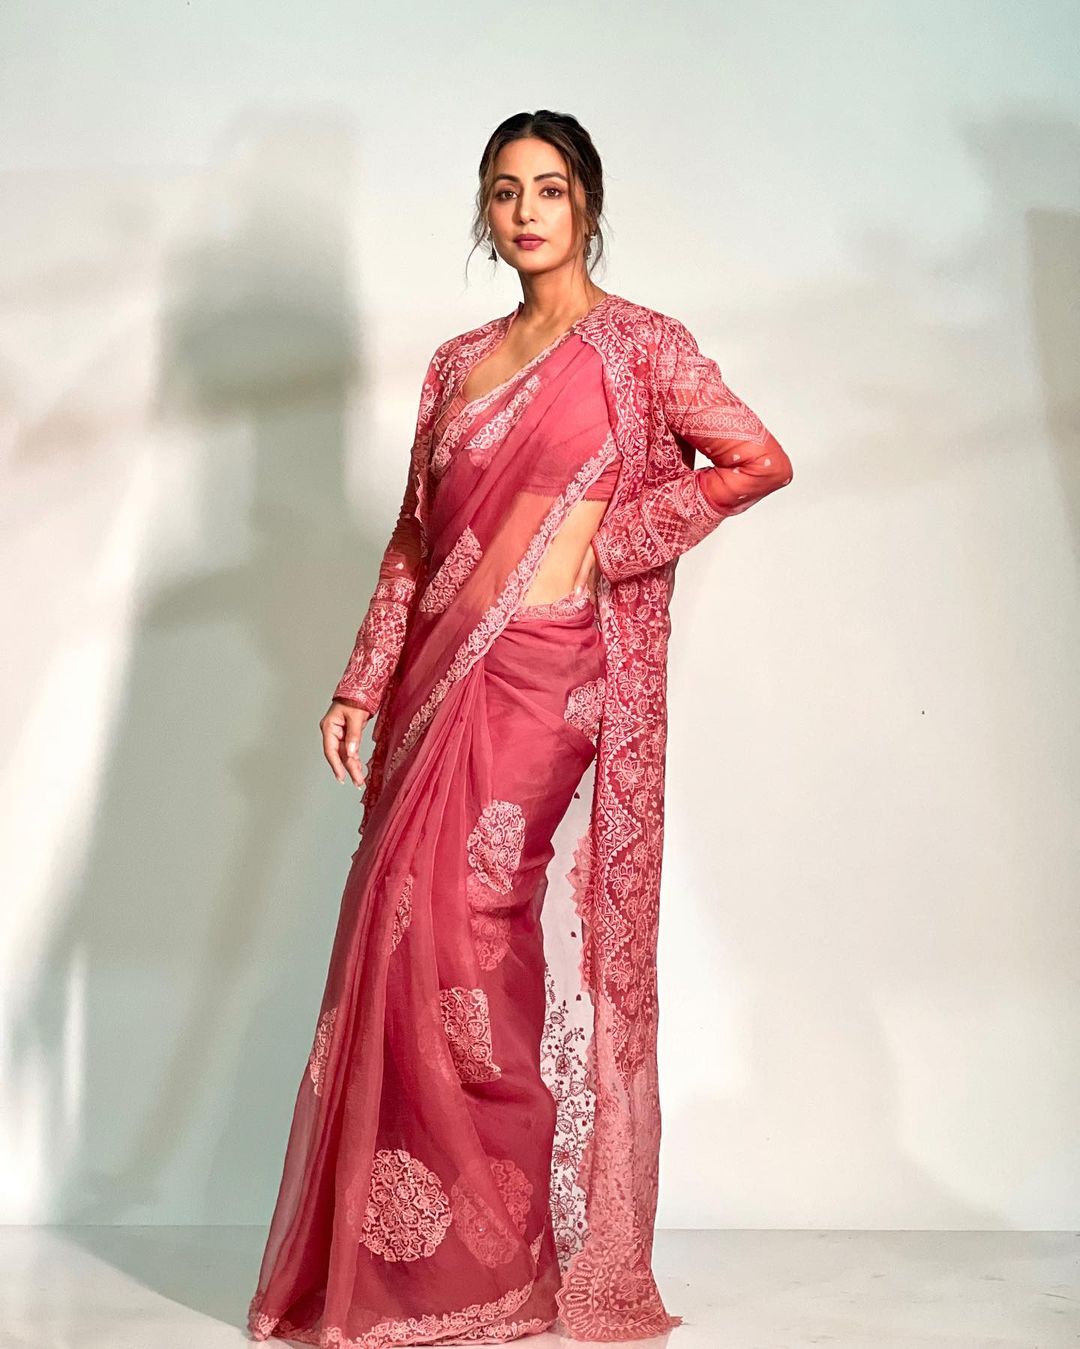 Hina Khan gives saree goals in an organza saree with a matching jacket